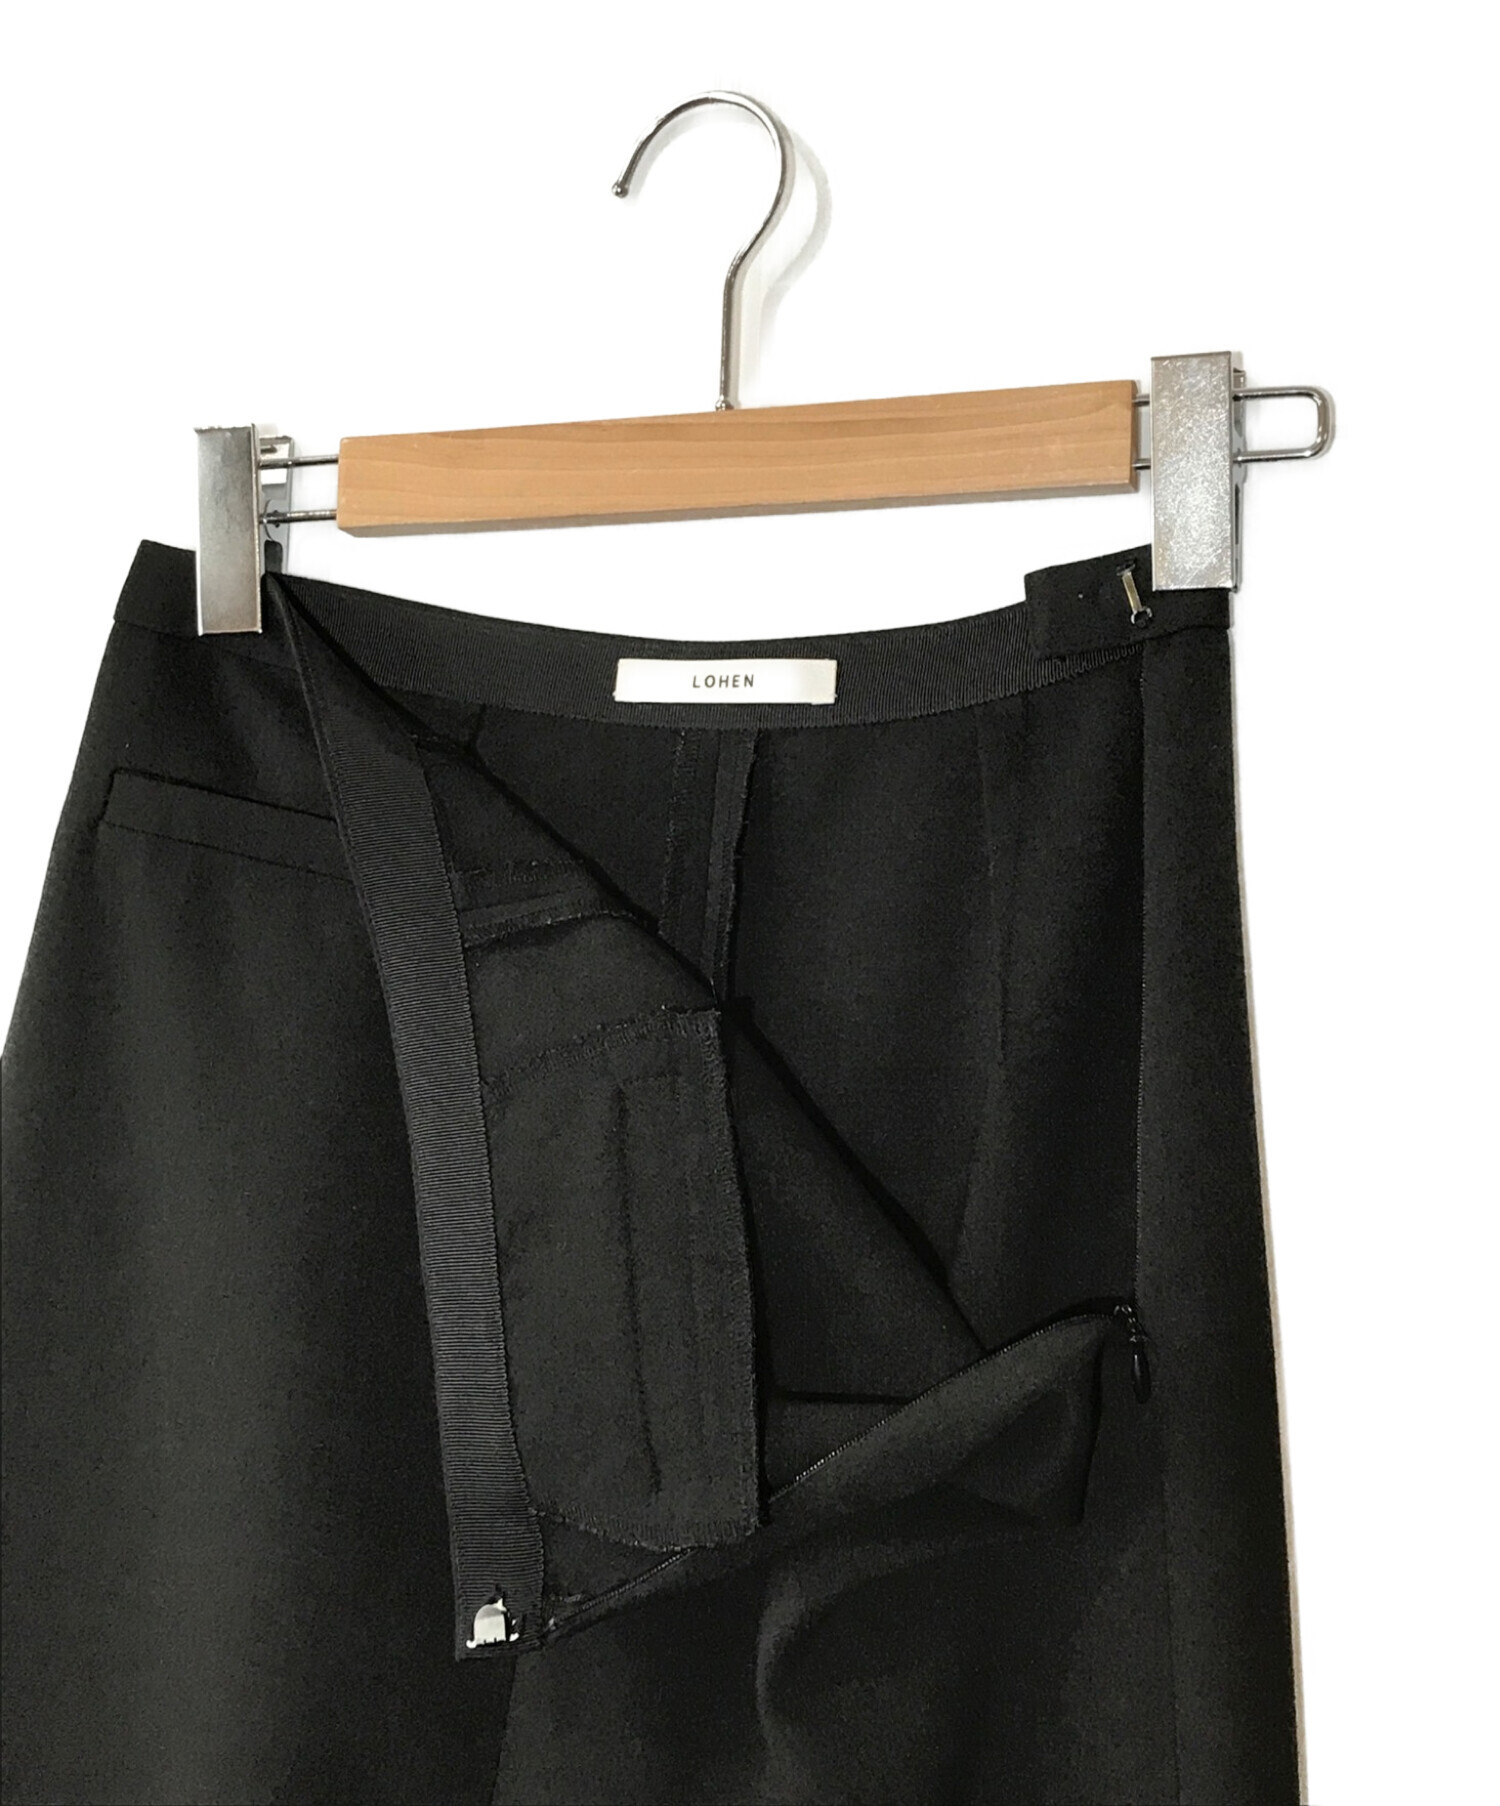 LOHEN (ローヘン) ストレートロングタイトスカート ブラック サイズ:38